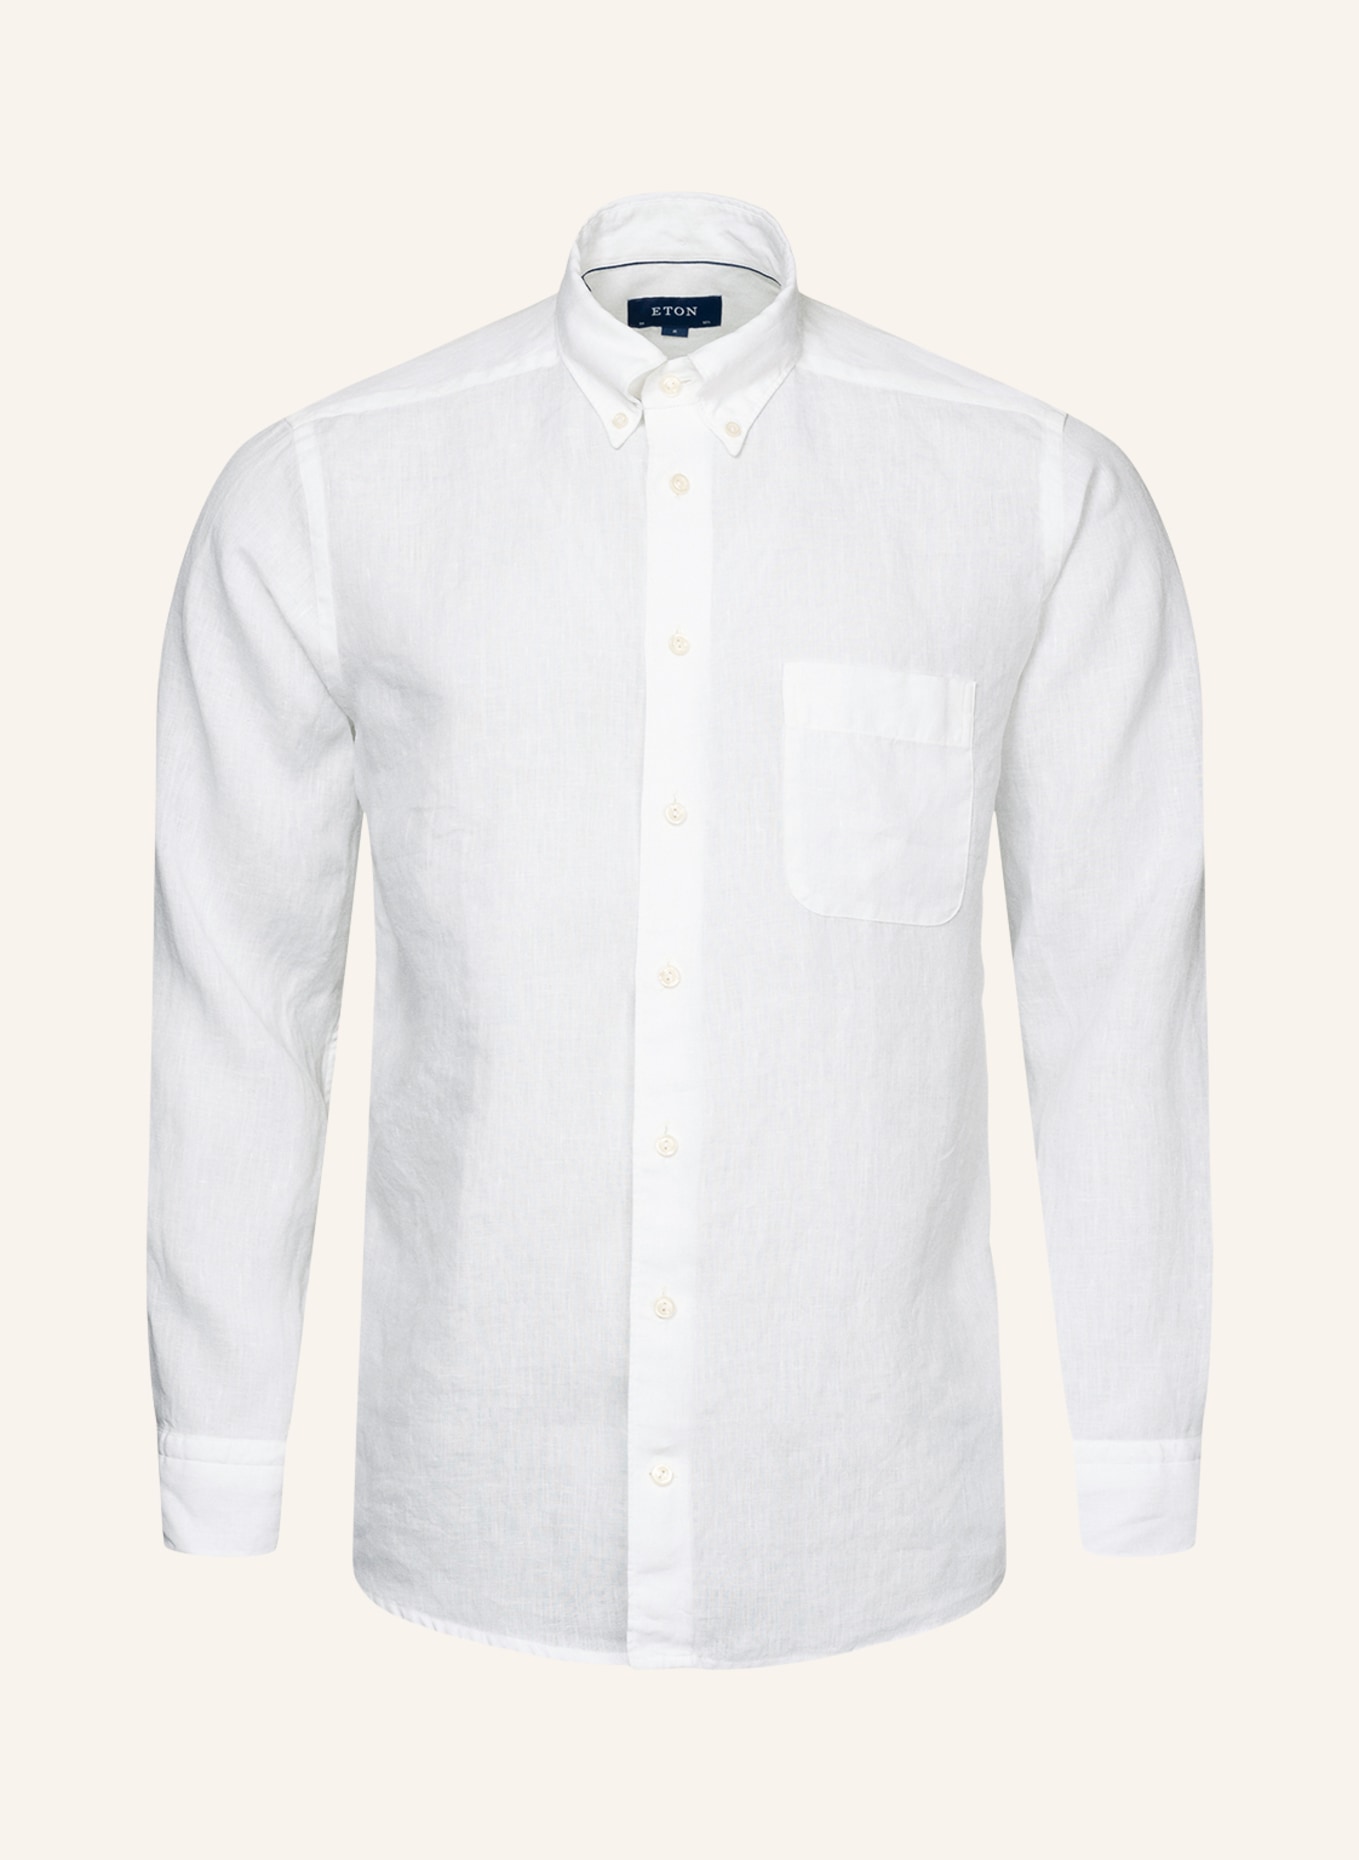 ETON Leinenhemd Slim Fit, Farbe: WEISS (Bild 1)